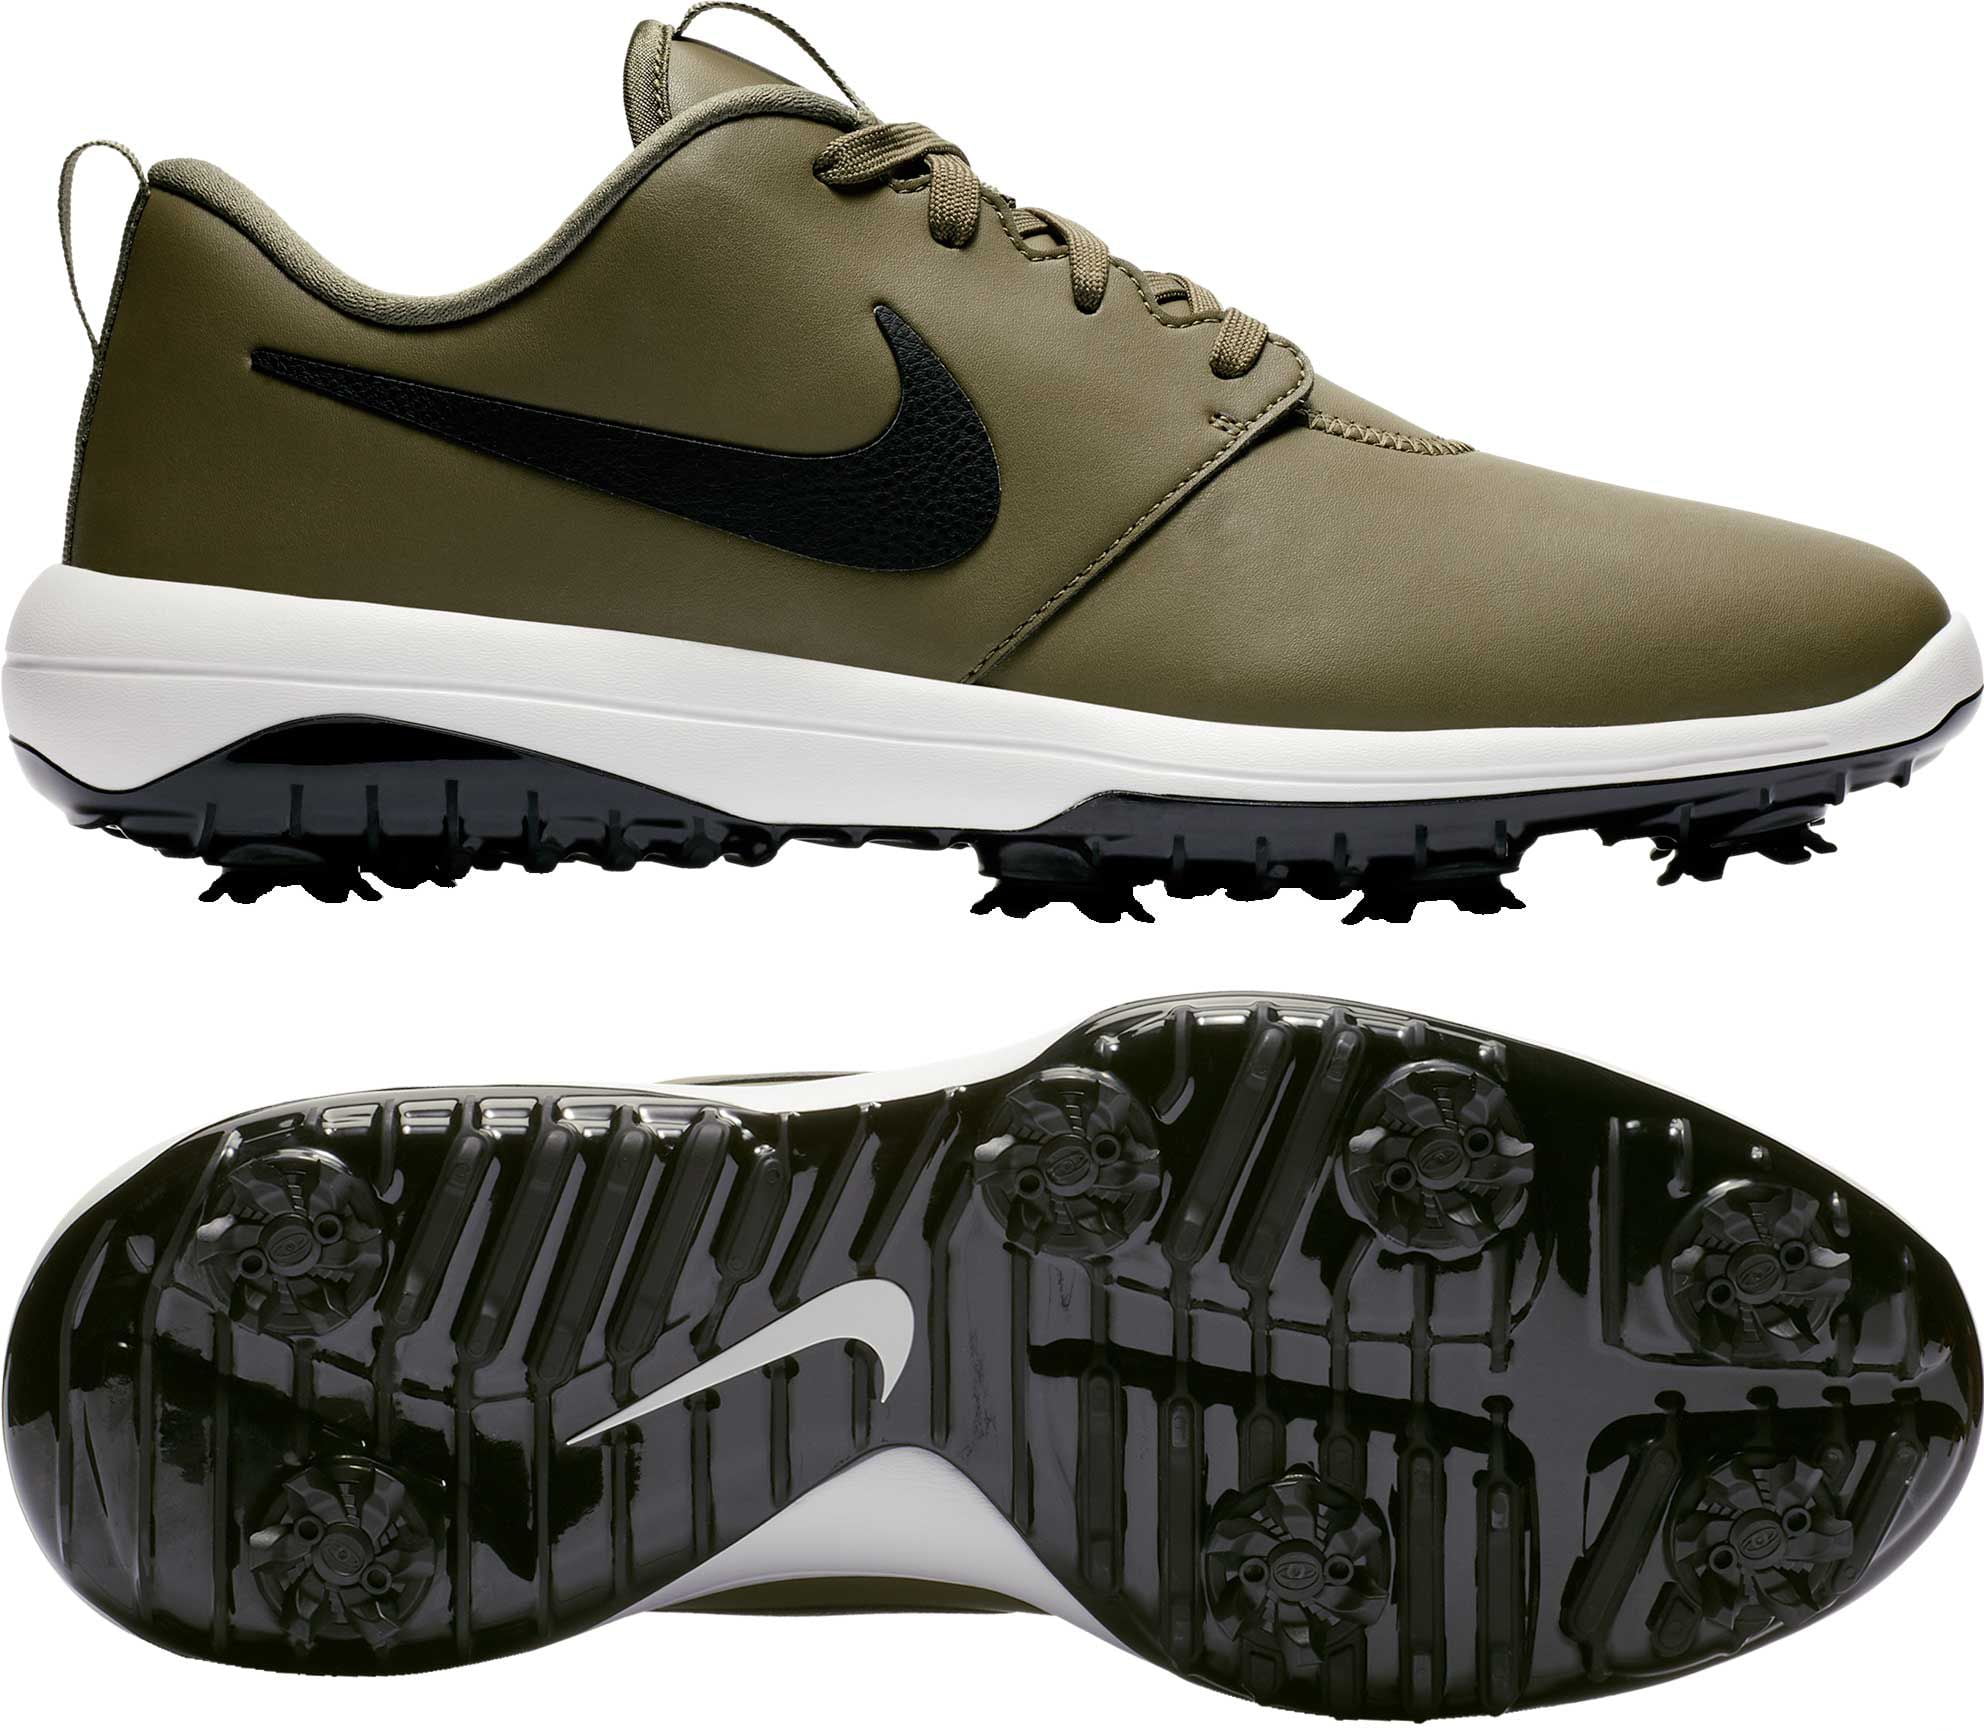 Nike Men's Roshe G Tour Golf Shoes